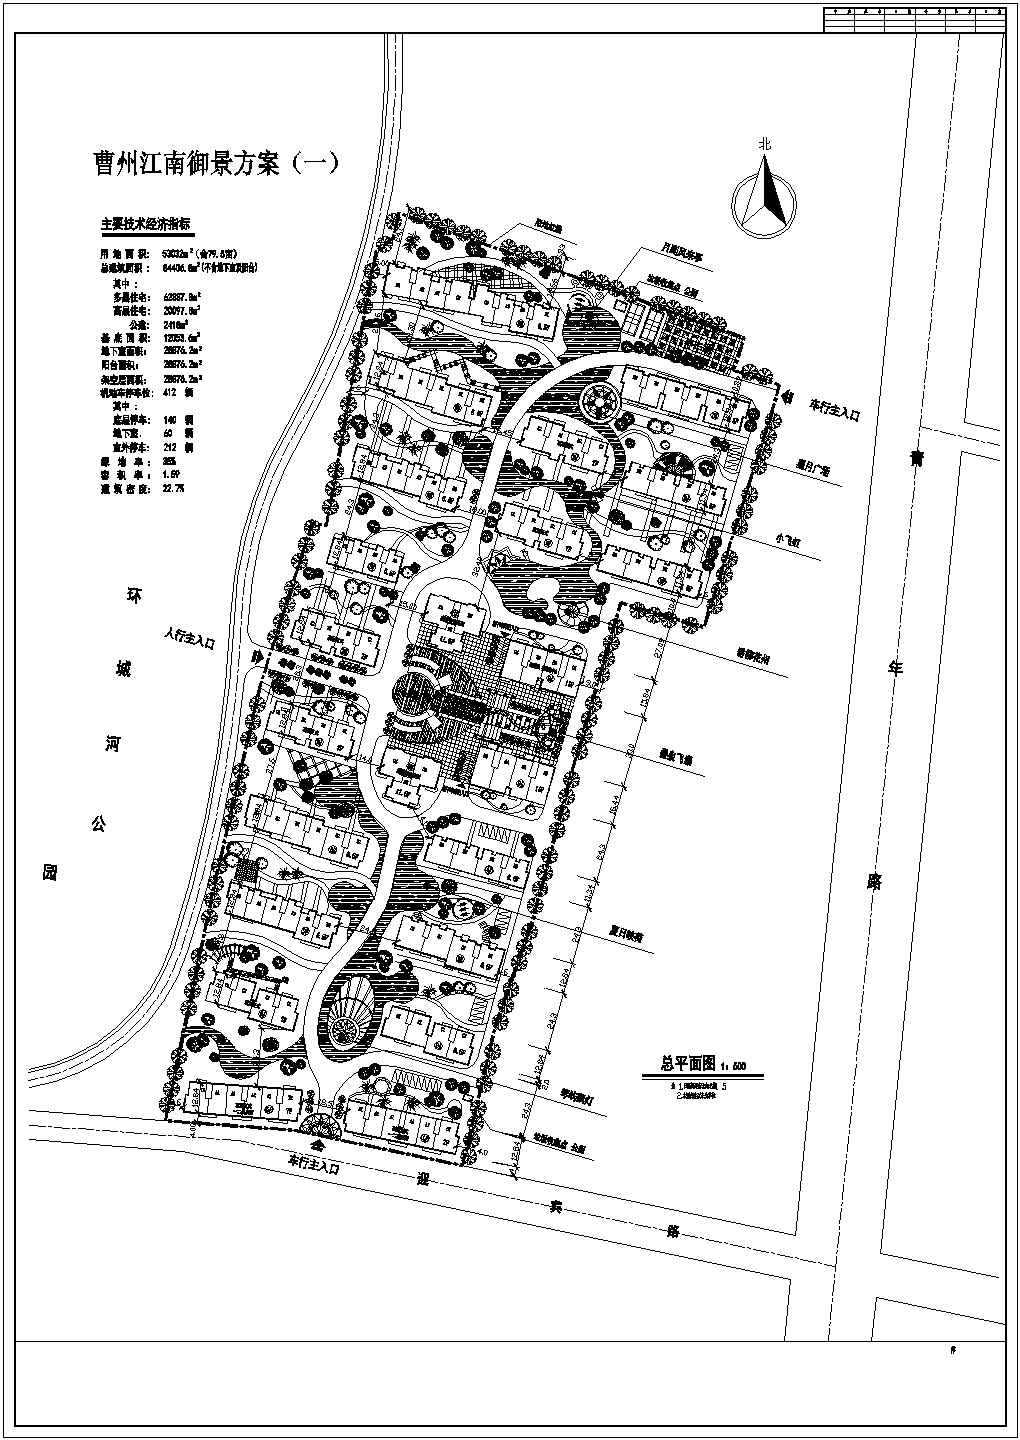 超级详细的62套高档住宅小区规划图纸大整合